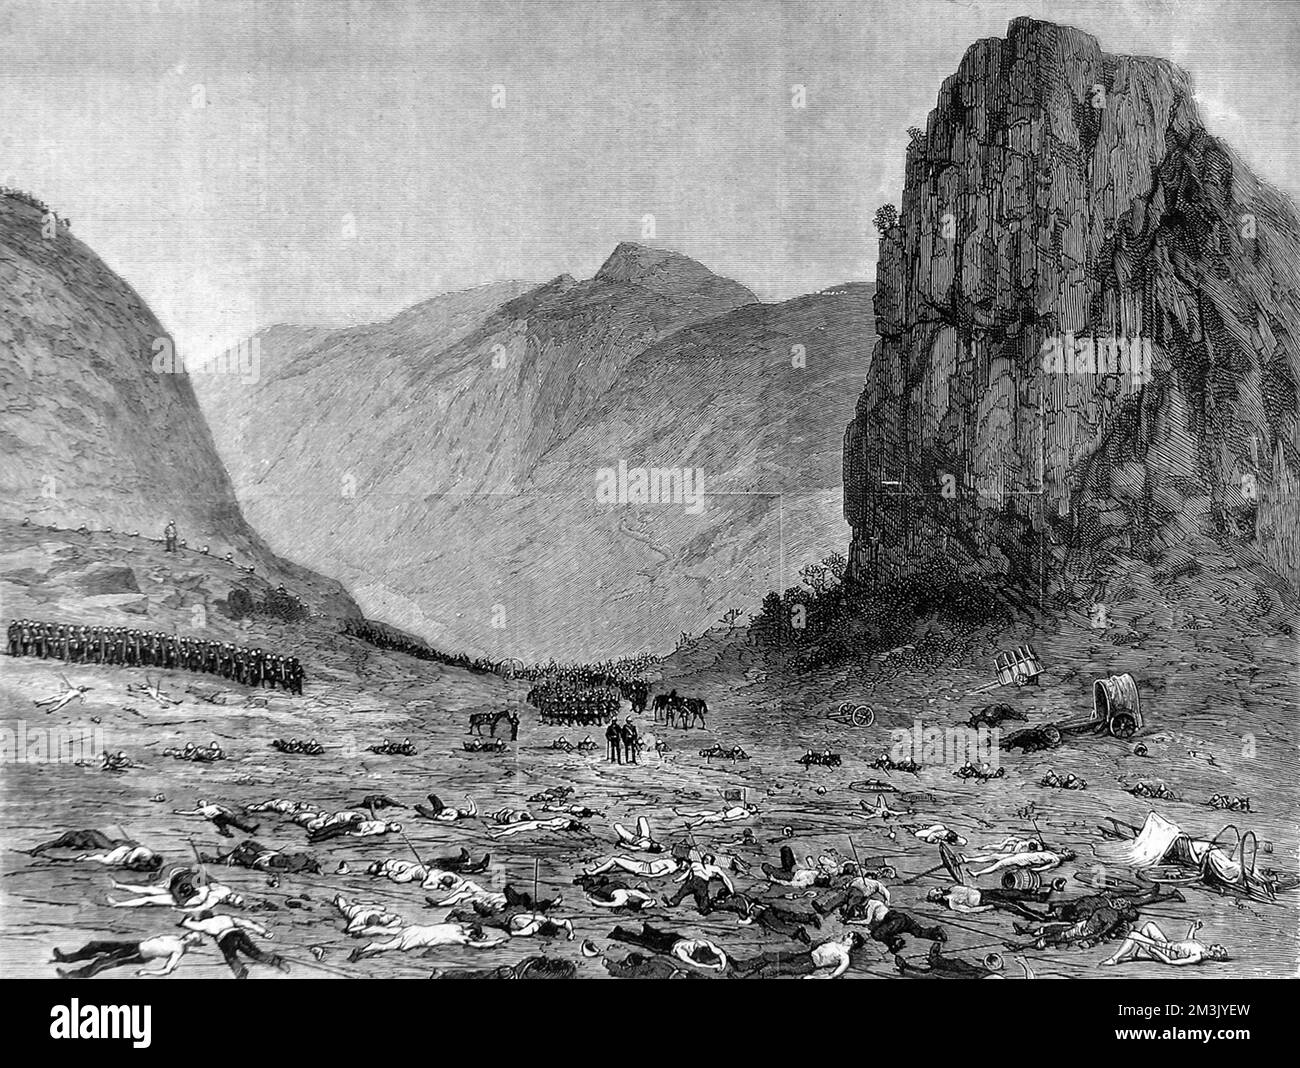 Lord Chelmsford arpentant les dégâts après la bataille d'Isandlwana. Le champ de bataille parsemé de cadavres est au premier plan, la colline d'Isandhlawana est au loin , tout comme le sont les Zulu impi (guerriers). Date: 1879 Banque D'Images